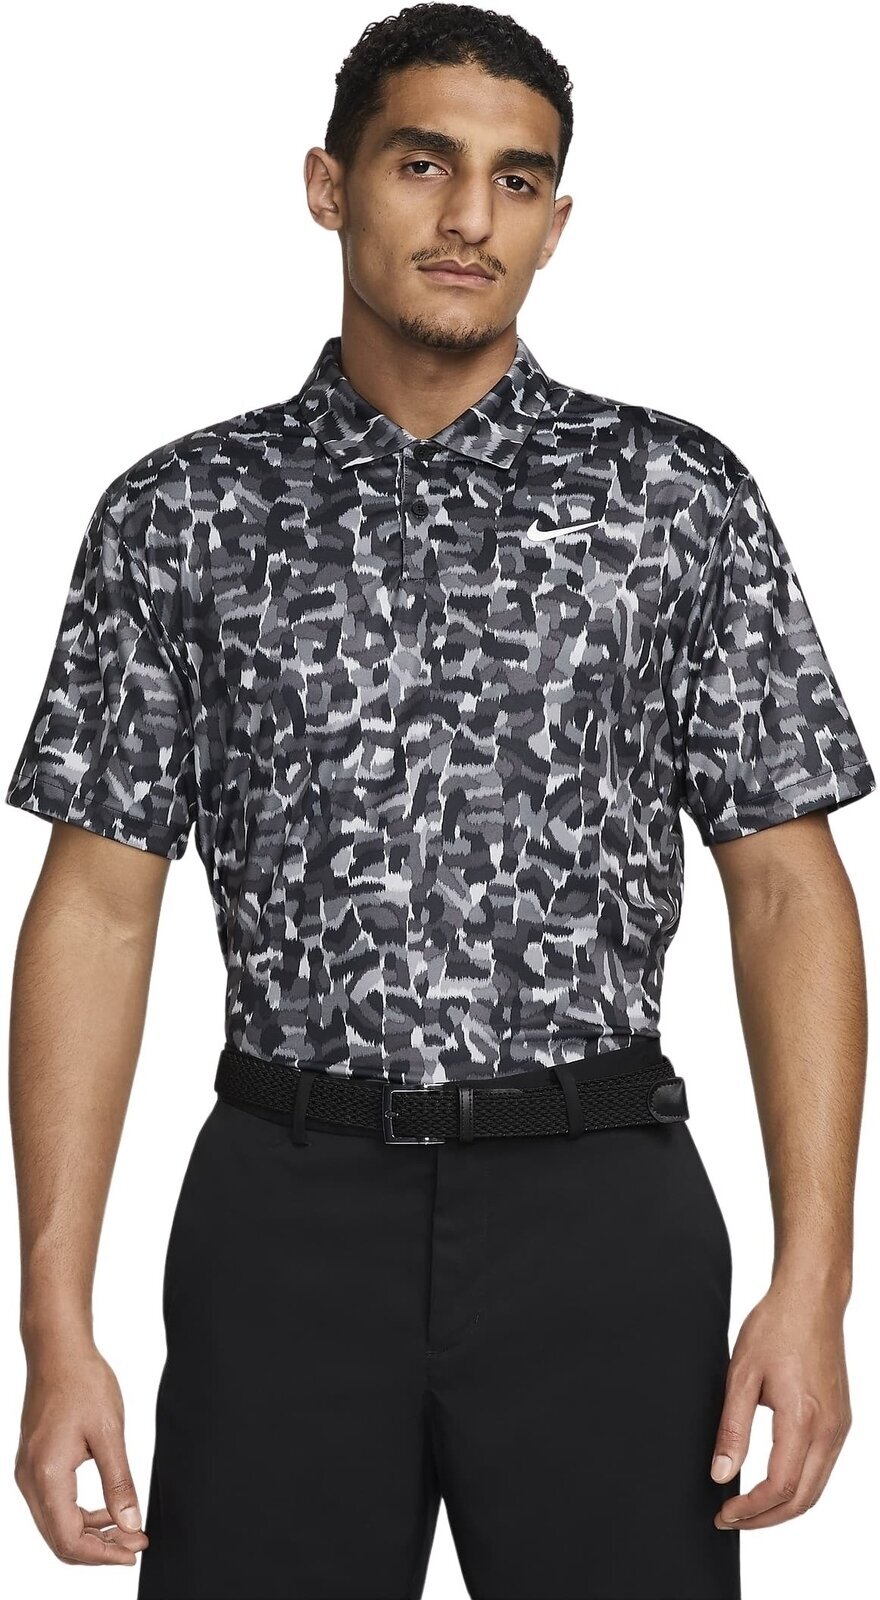 Polo košile Nike Dri-Fit Tour Confetti Print Mens Polo Light Smoke Grey/White XL